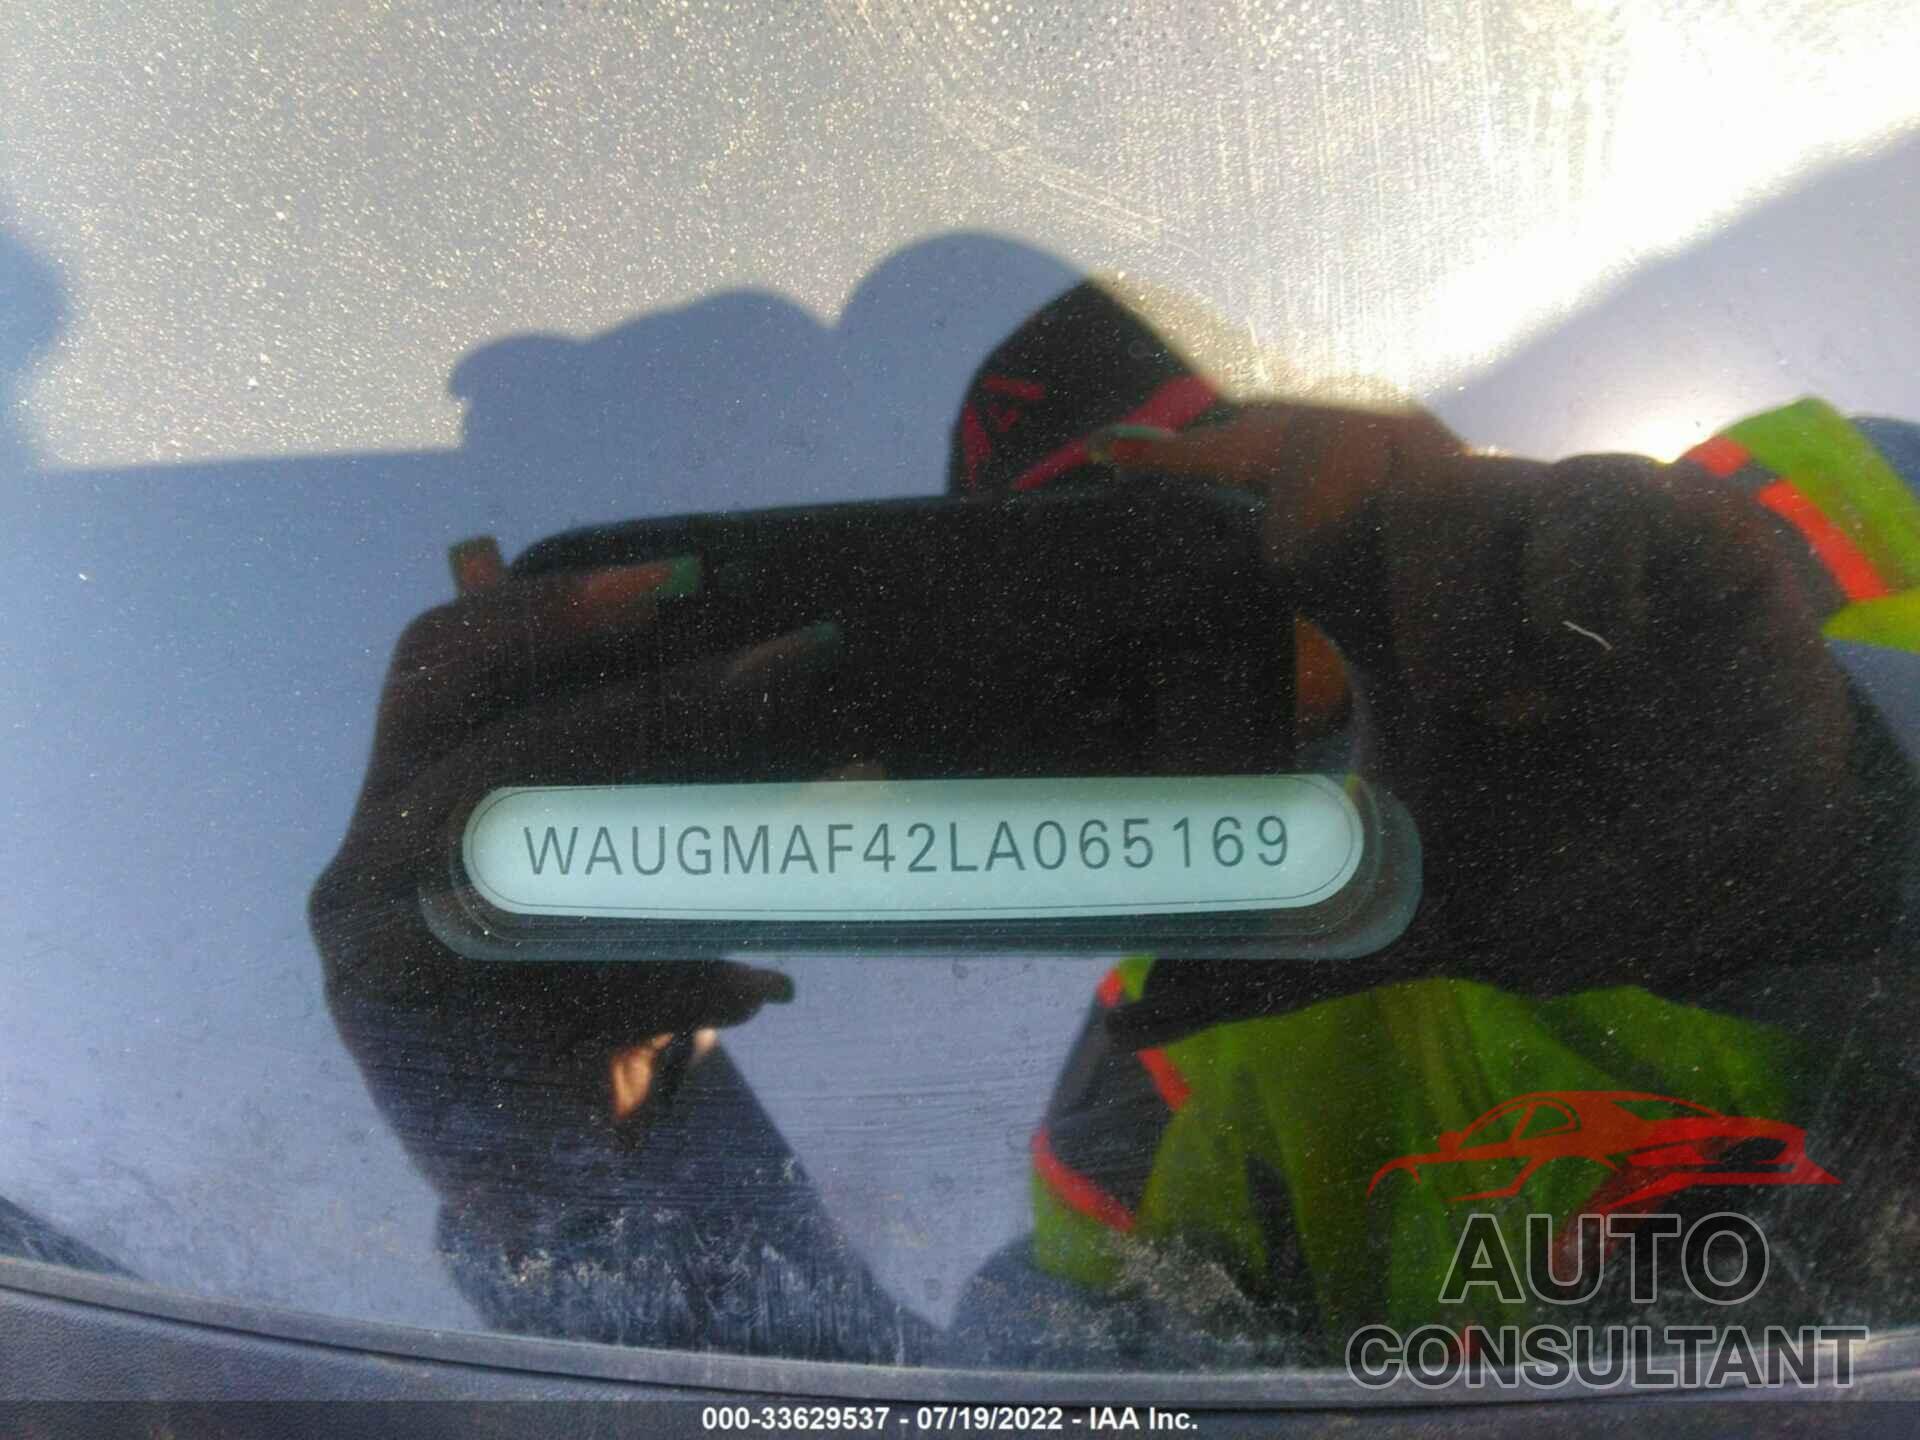 AUDI A4 2020 - WAUGMAF42LA065169